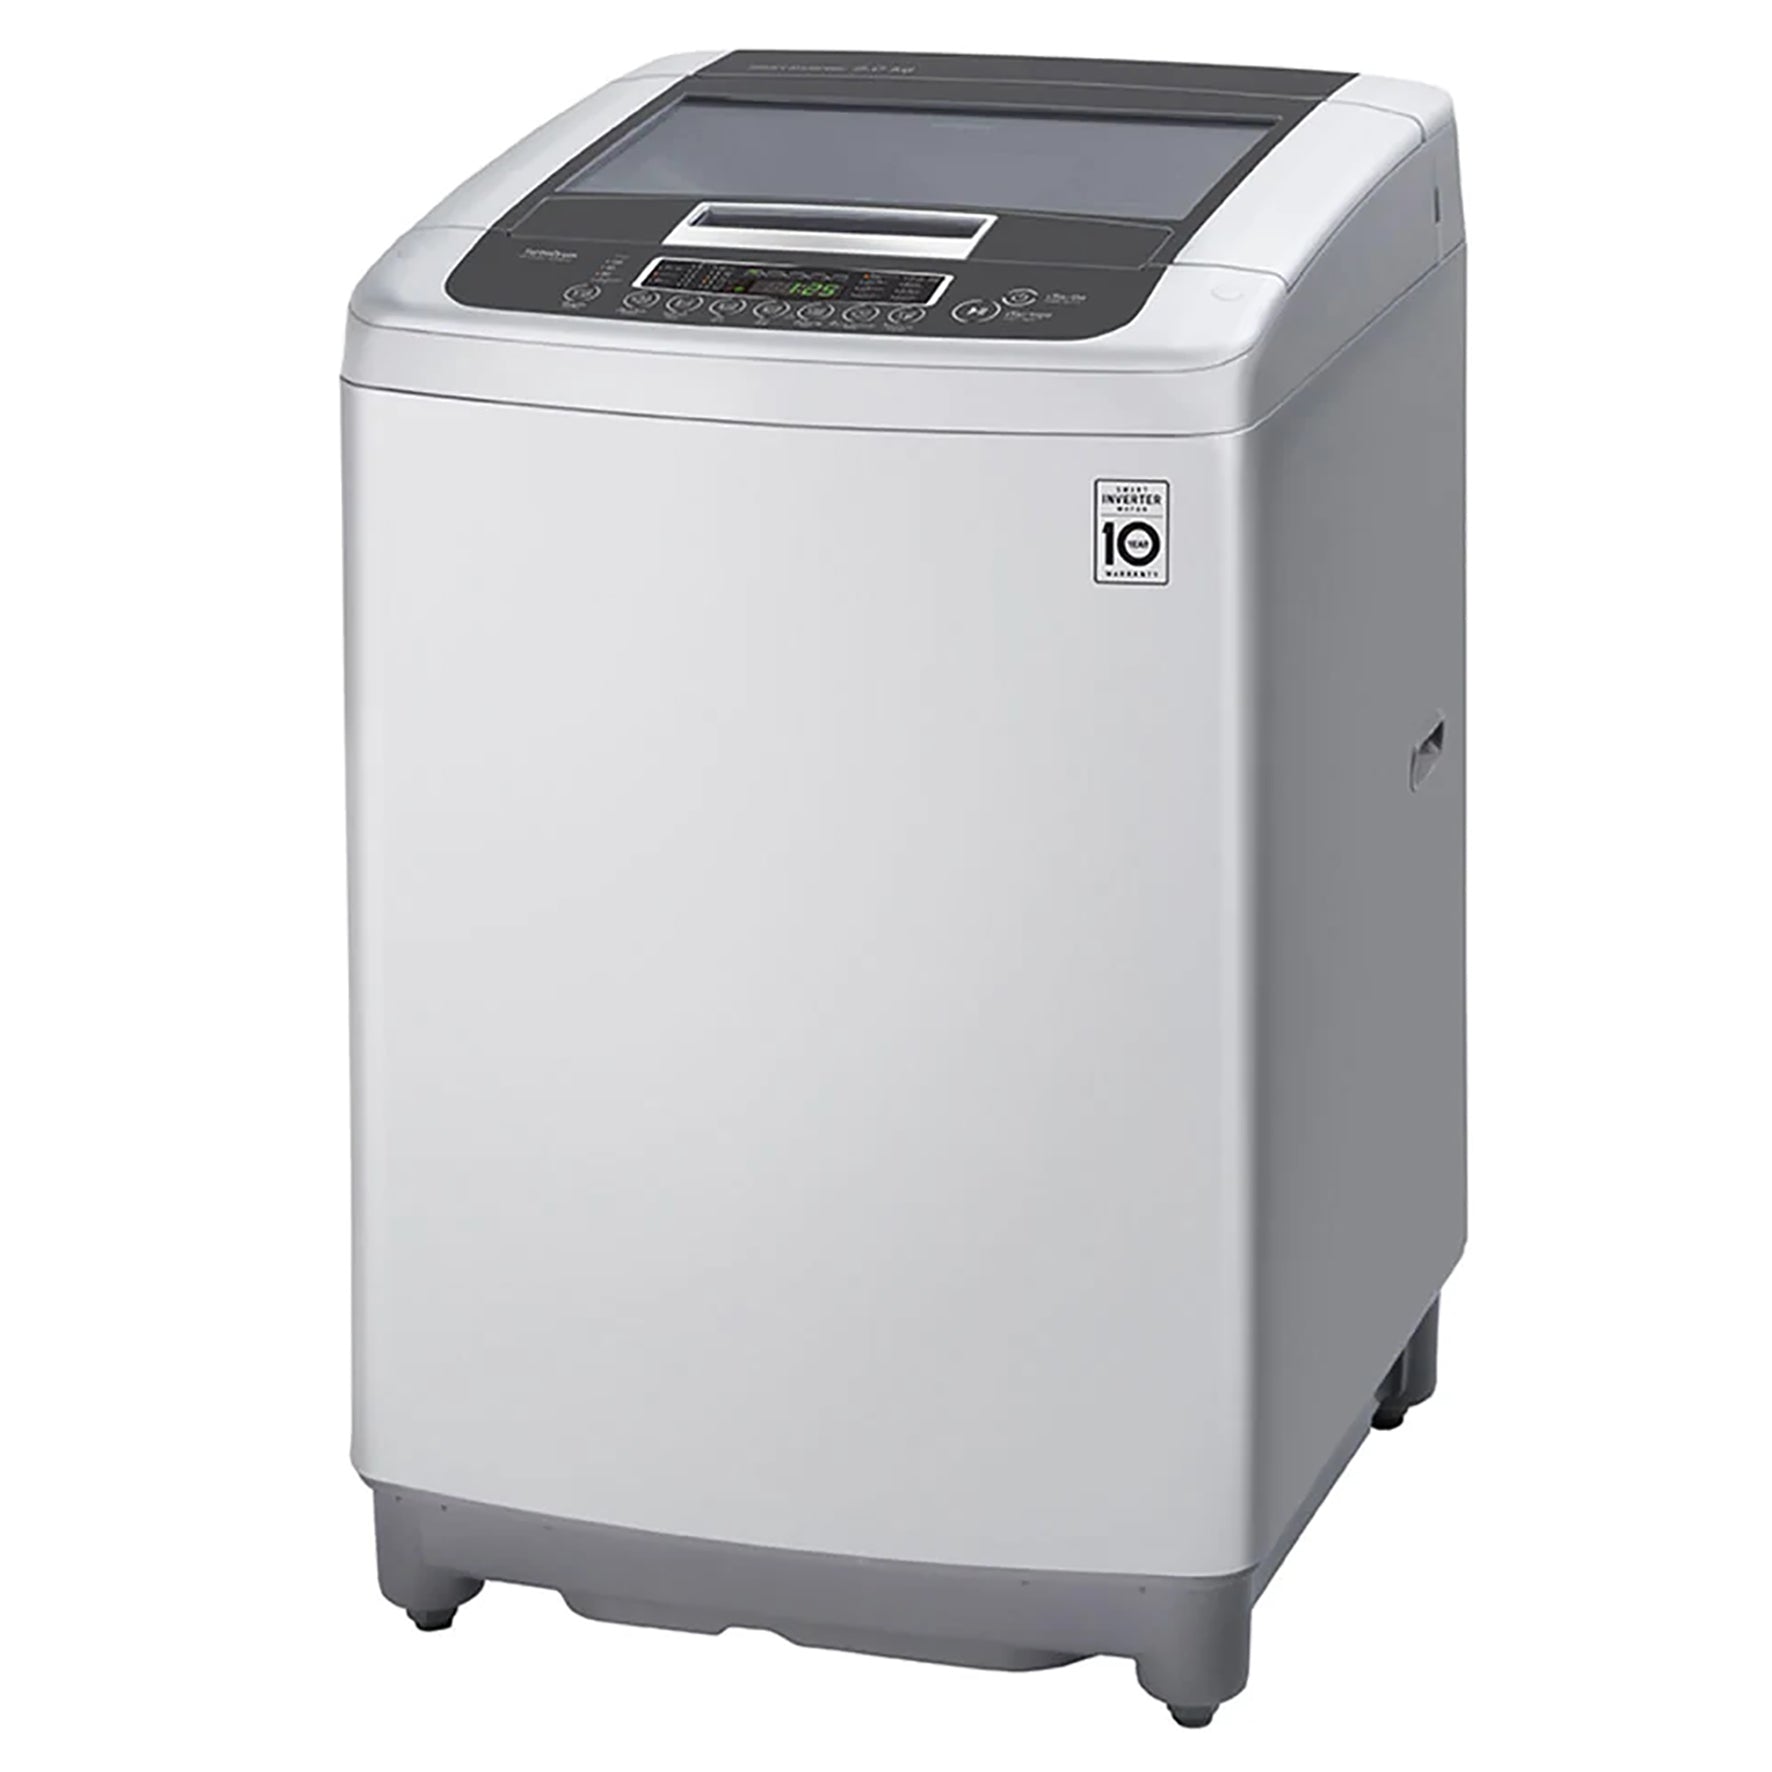 LG 13kg Top Load Washing Machine Silver T1369NEHTF